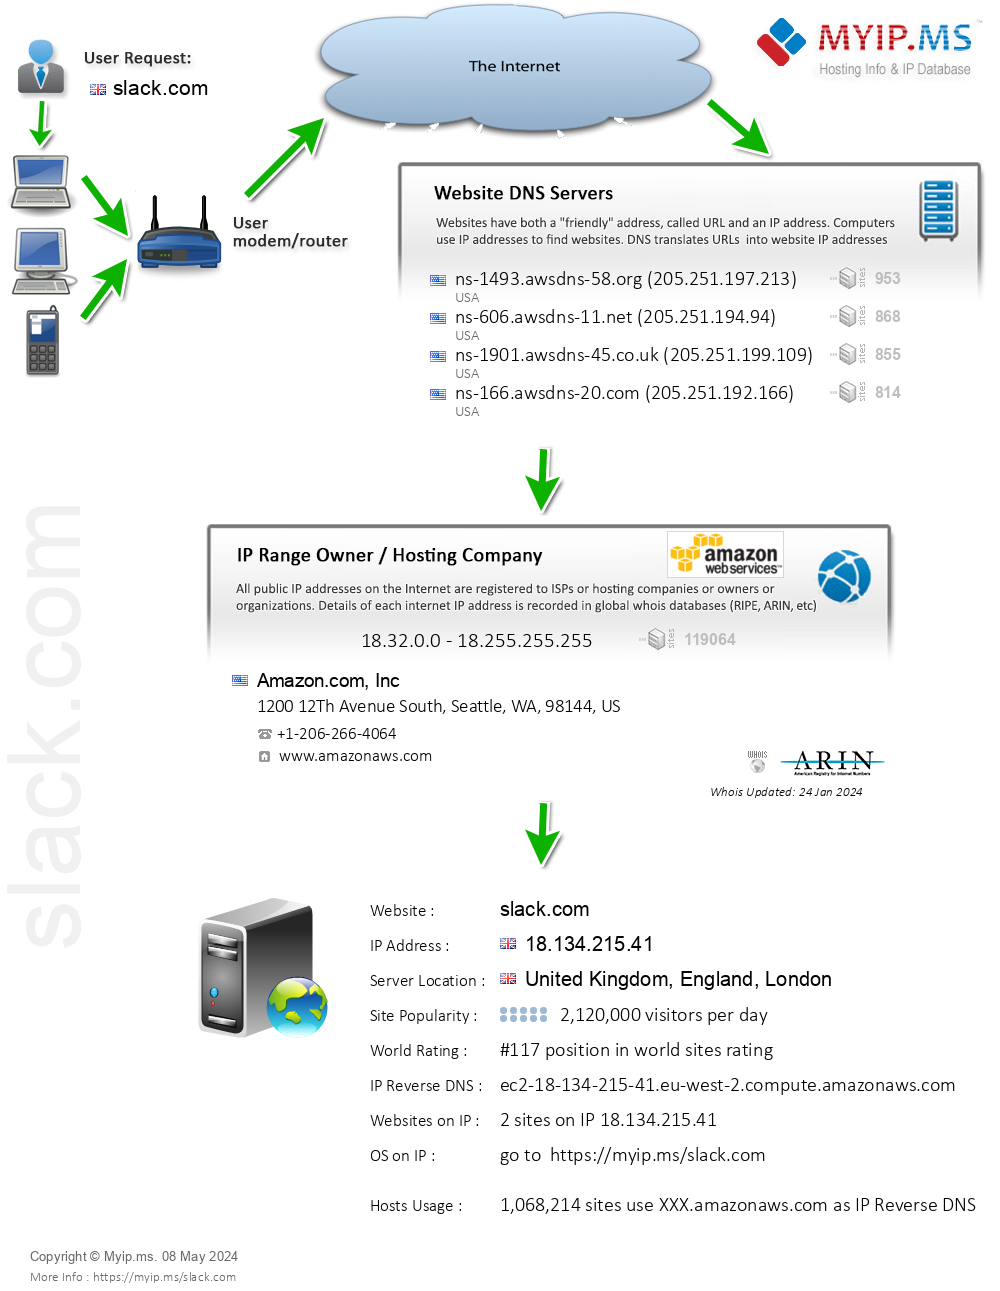 Slack.com - Website Hosting Visual IP Diagram